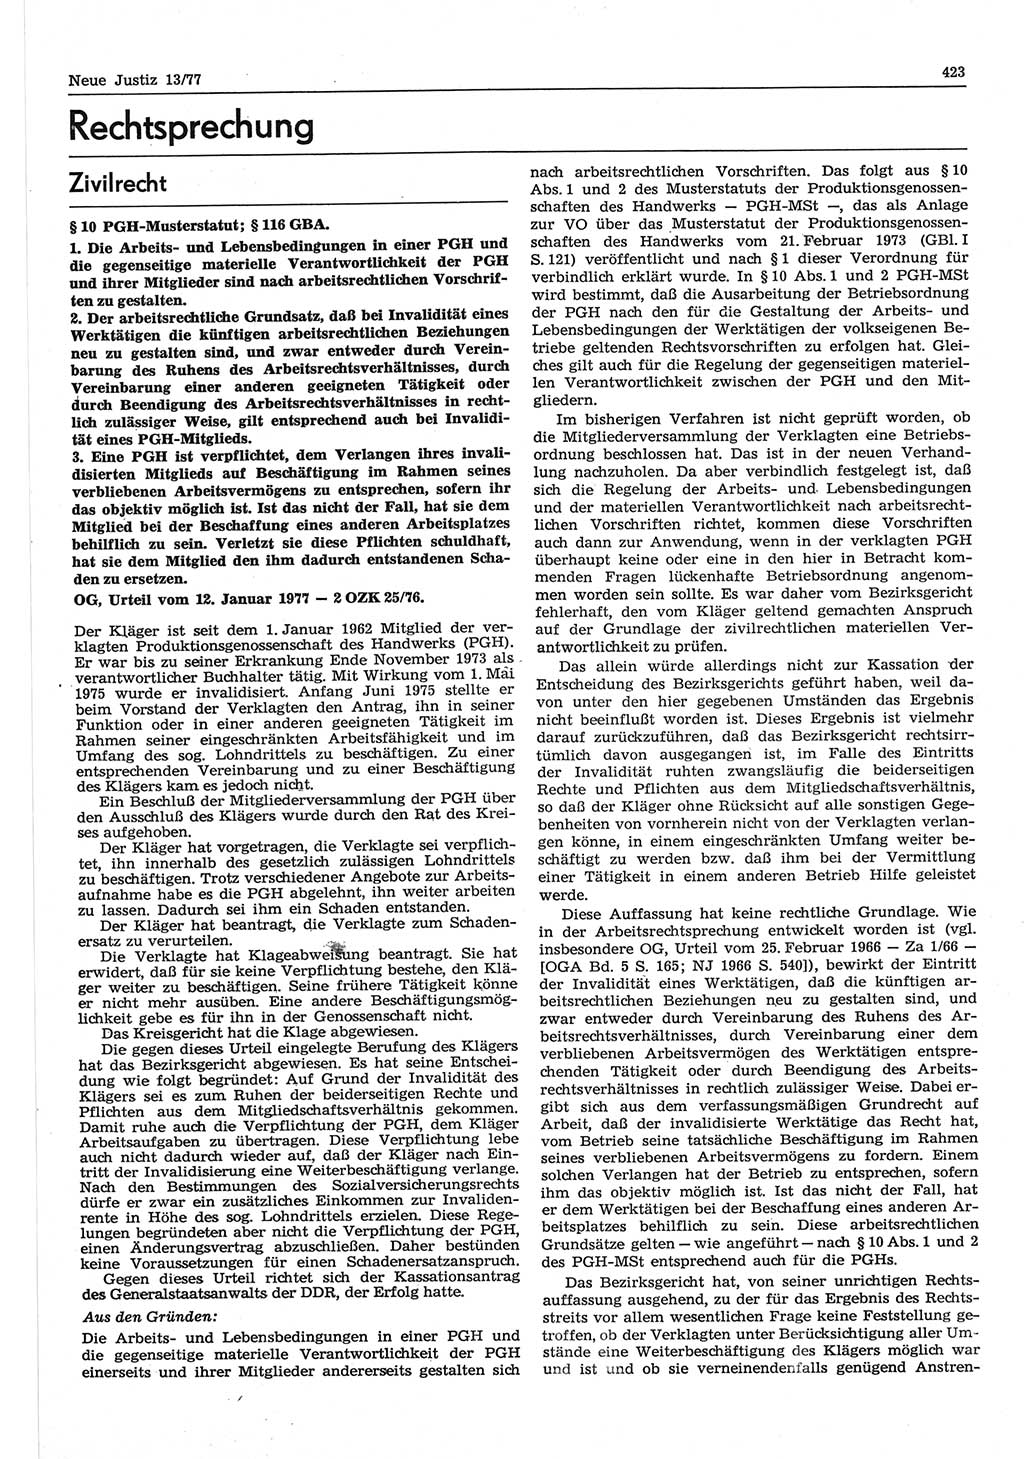 Neue Justiz (NJ), Zeitschrift für Recht und Rechtswissenschaft-Zeitschrift, sozialistisches Recht und Gesetzlichkeit, 31. Jahrgang 1977, Seite 423 (NJ DDR 1977, S. 423)